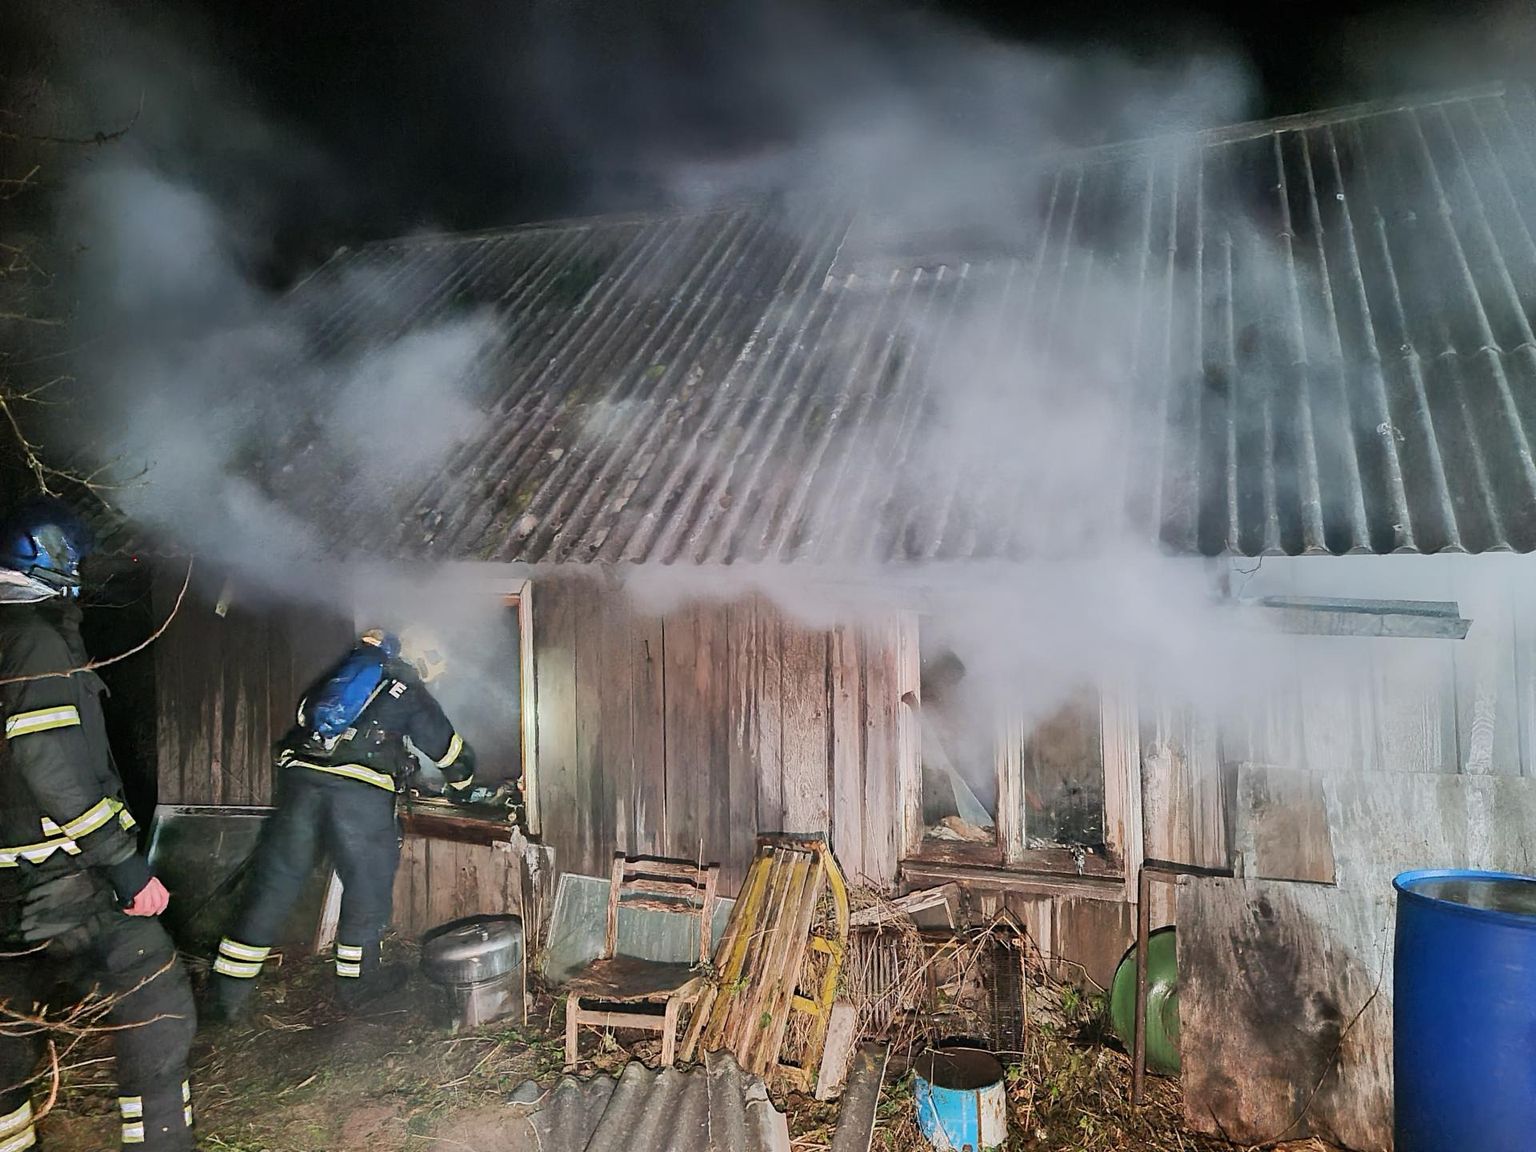 Põlenud saunamaja sai suitsu- ja kustutusvee kahjustusi. Päästjate esialgsel hinnangul võis kahjutuli alata hooletusest küünla põletamisel.